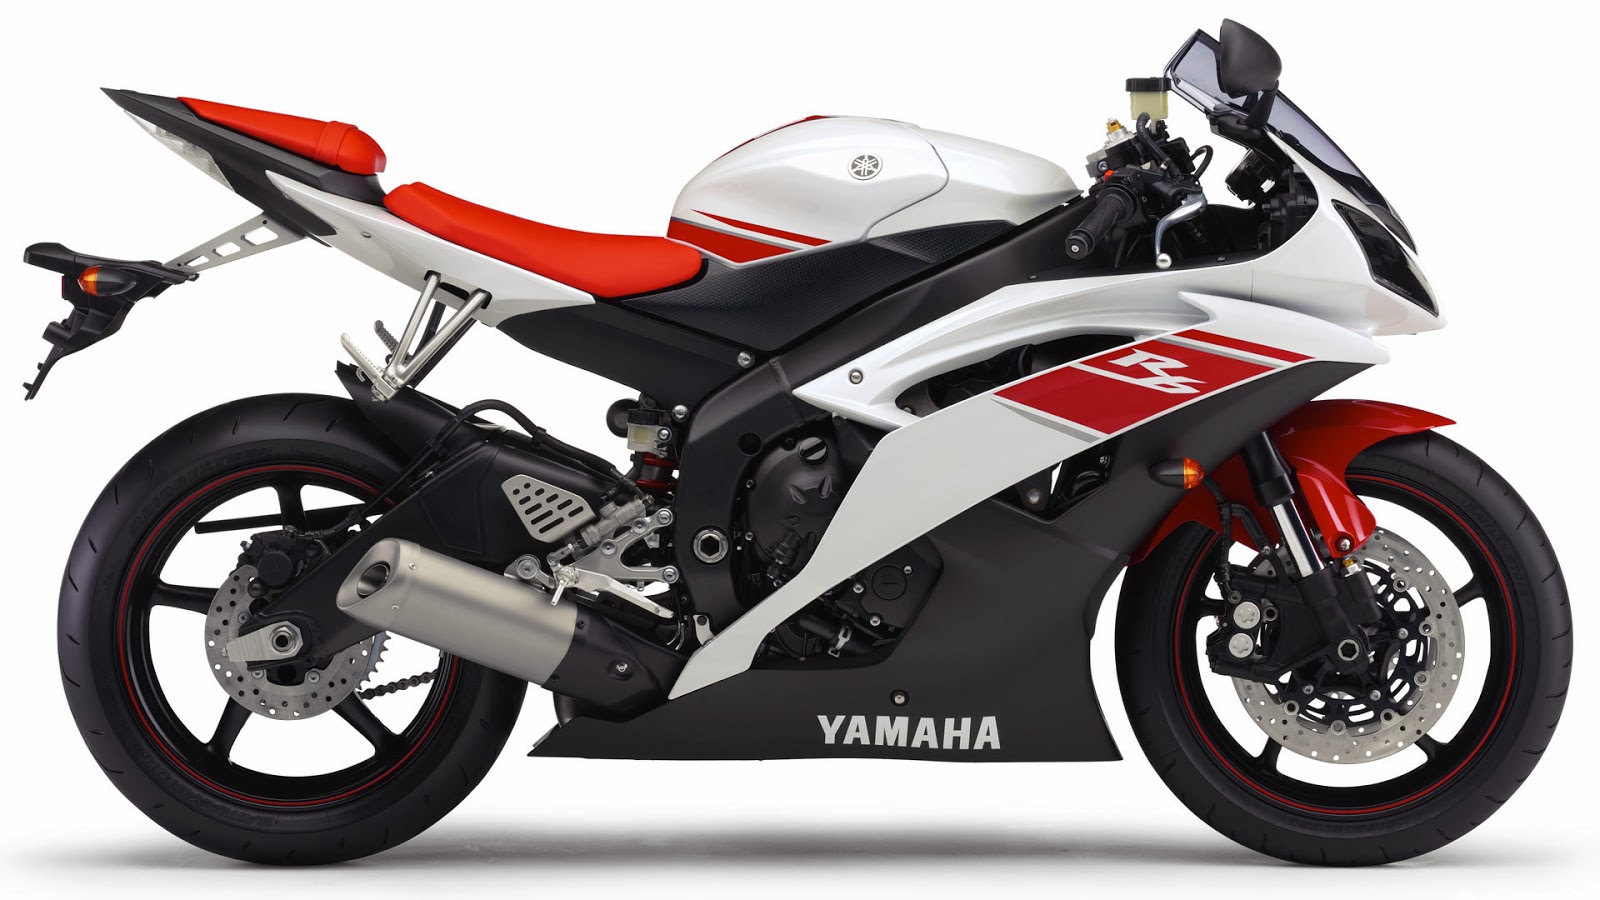 Yamaha YZF R15 V3 Pics - Yamaha YZF R15 V3 Sports Bike